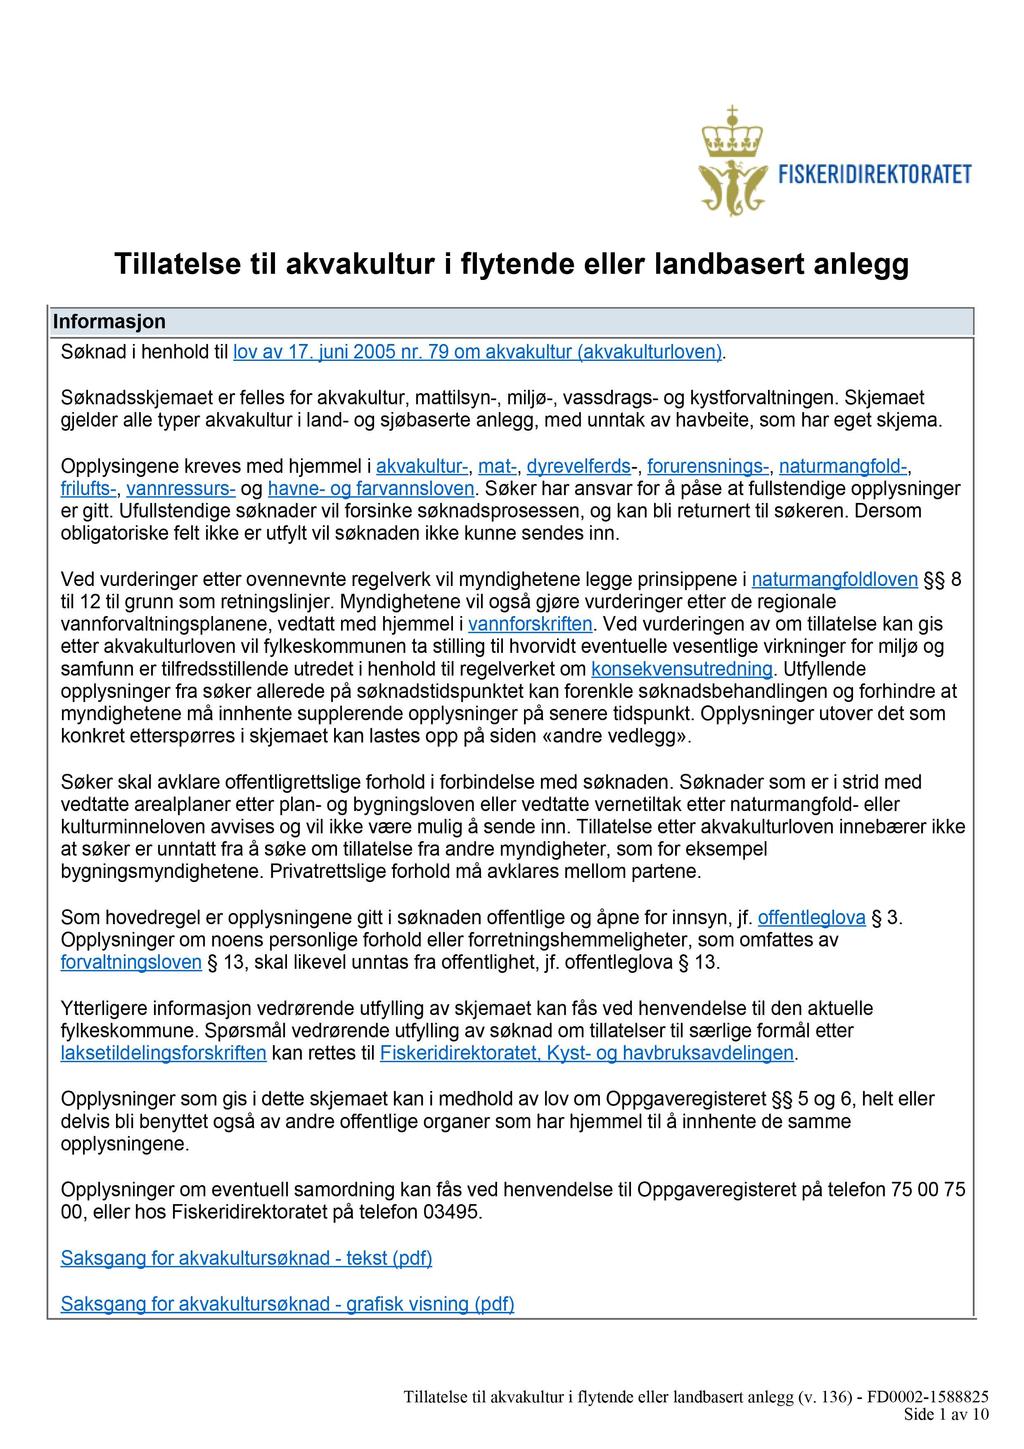 Informasjon Tillatelse til akvakultur i flytende eller landbasert anlegg Søknad i henhold til lov av 17. juni 2005 nr. 79 om akvakultur (akvakulturloven).